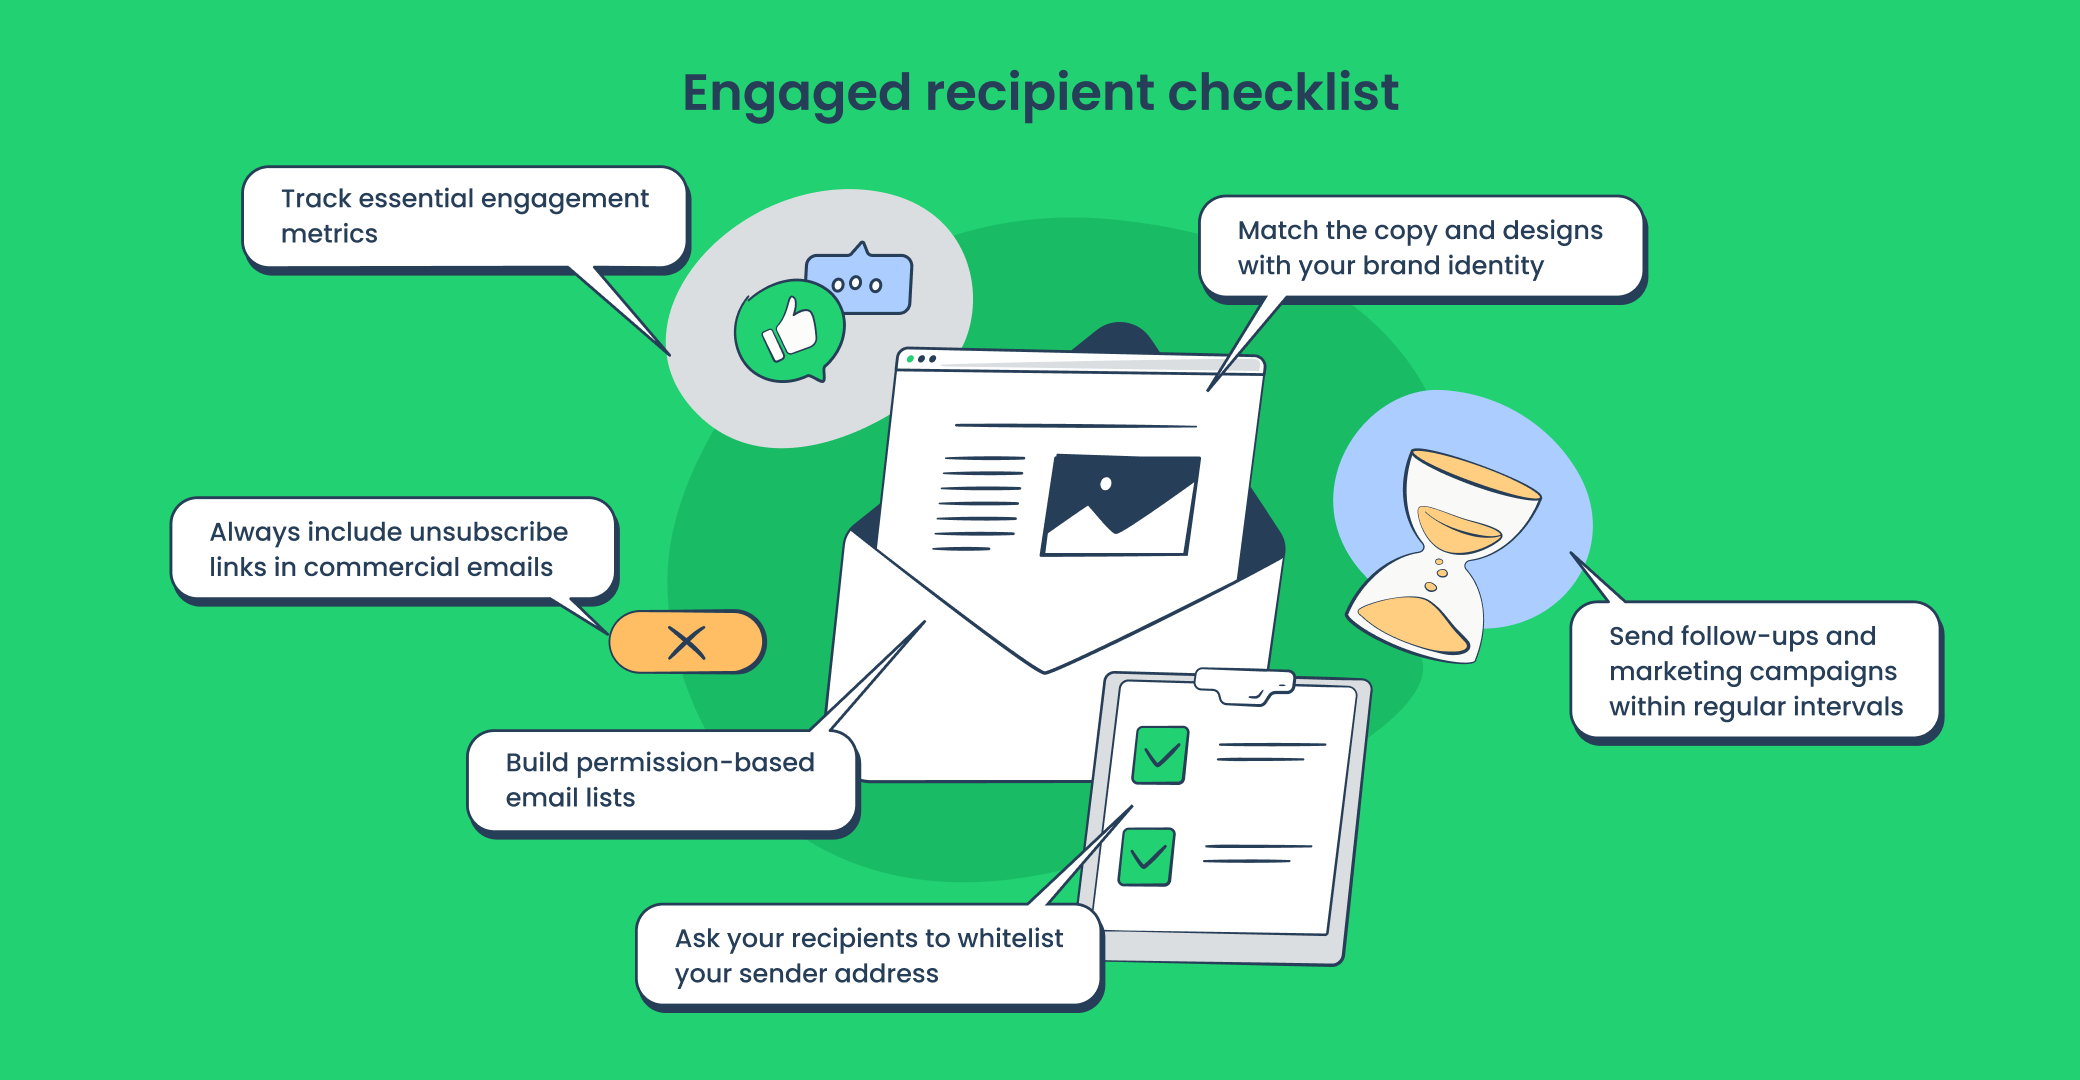 Engaged recipient checklist 